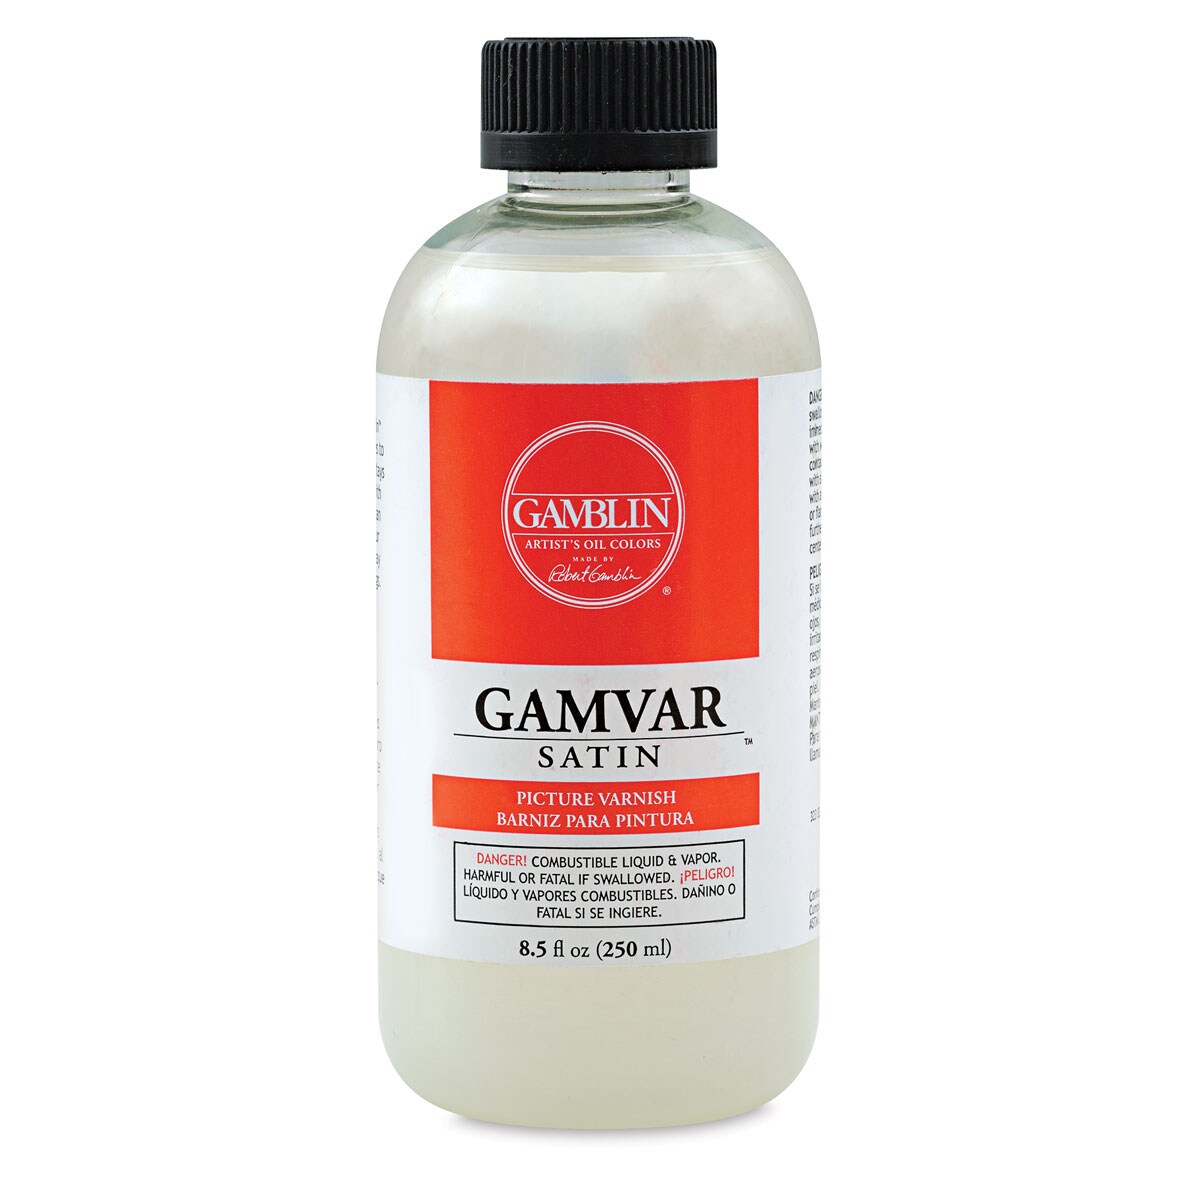 Gamblin Gamvar Satin Varnish - 8.5 oz bottle